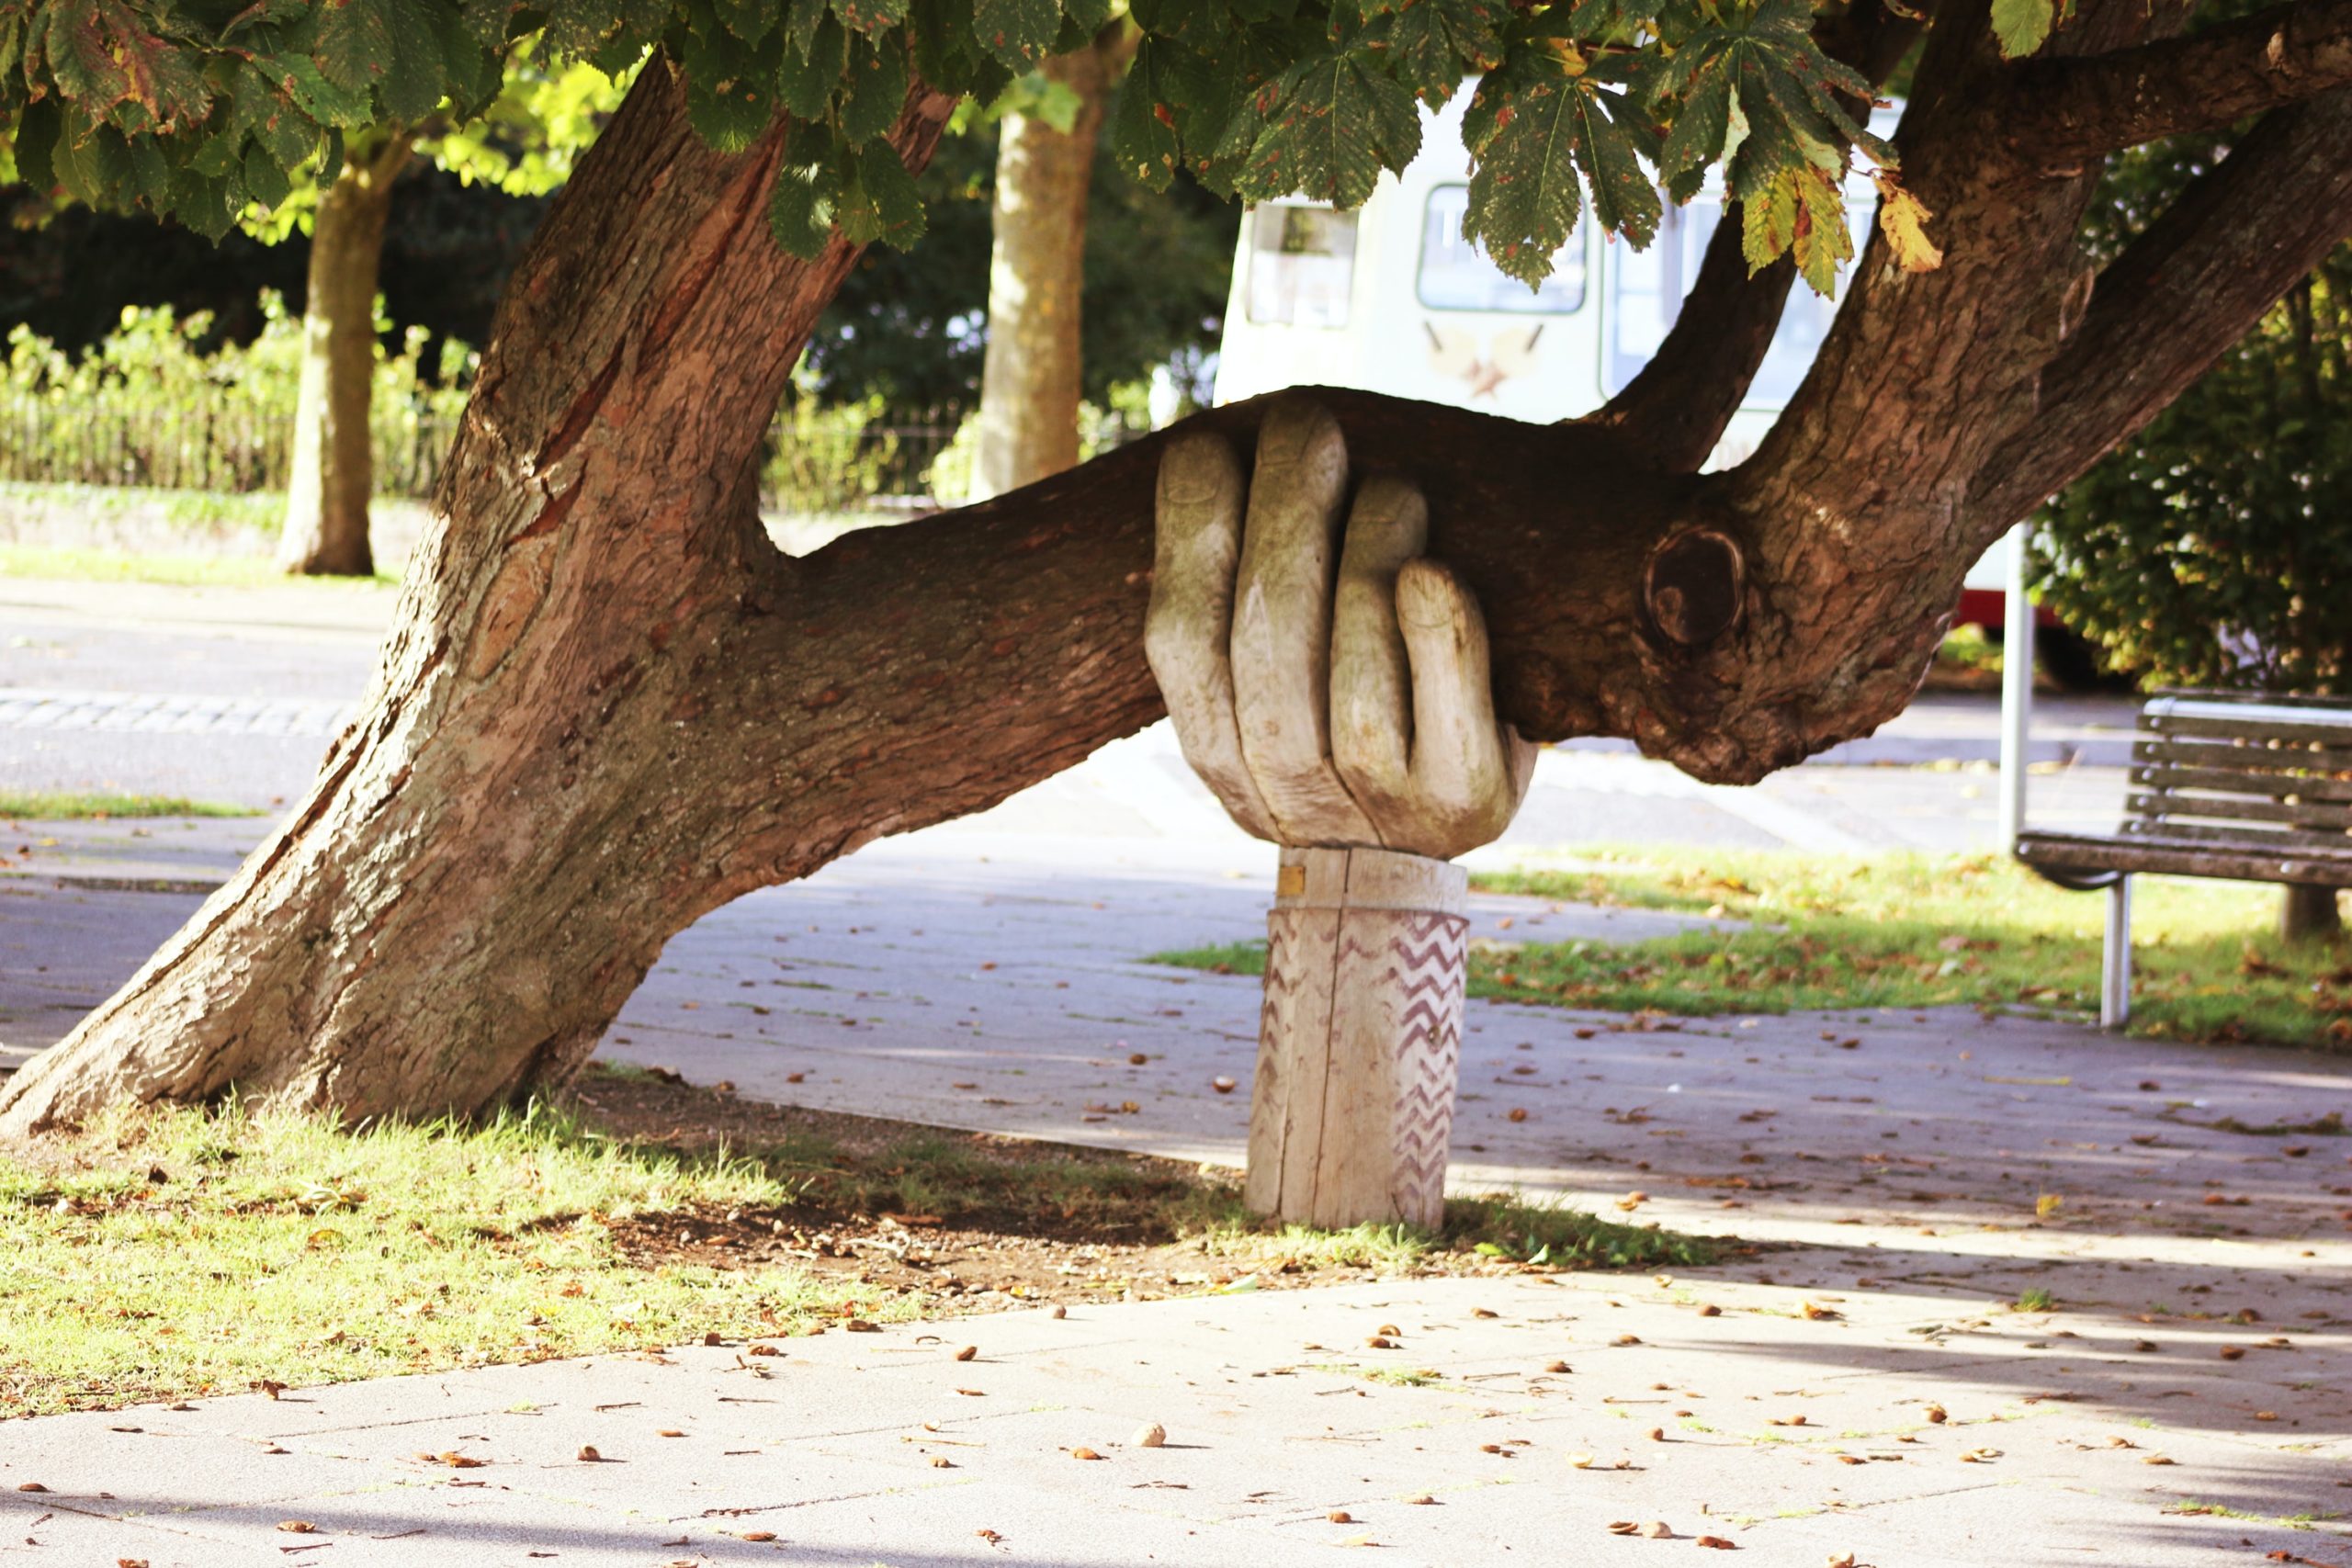 pochylone drzewo podparte filarem w kształcie ręki